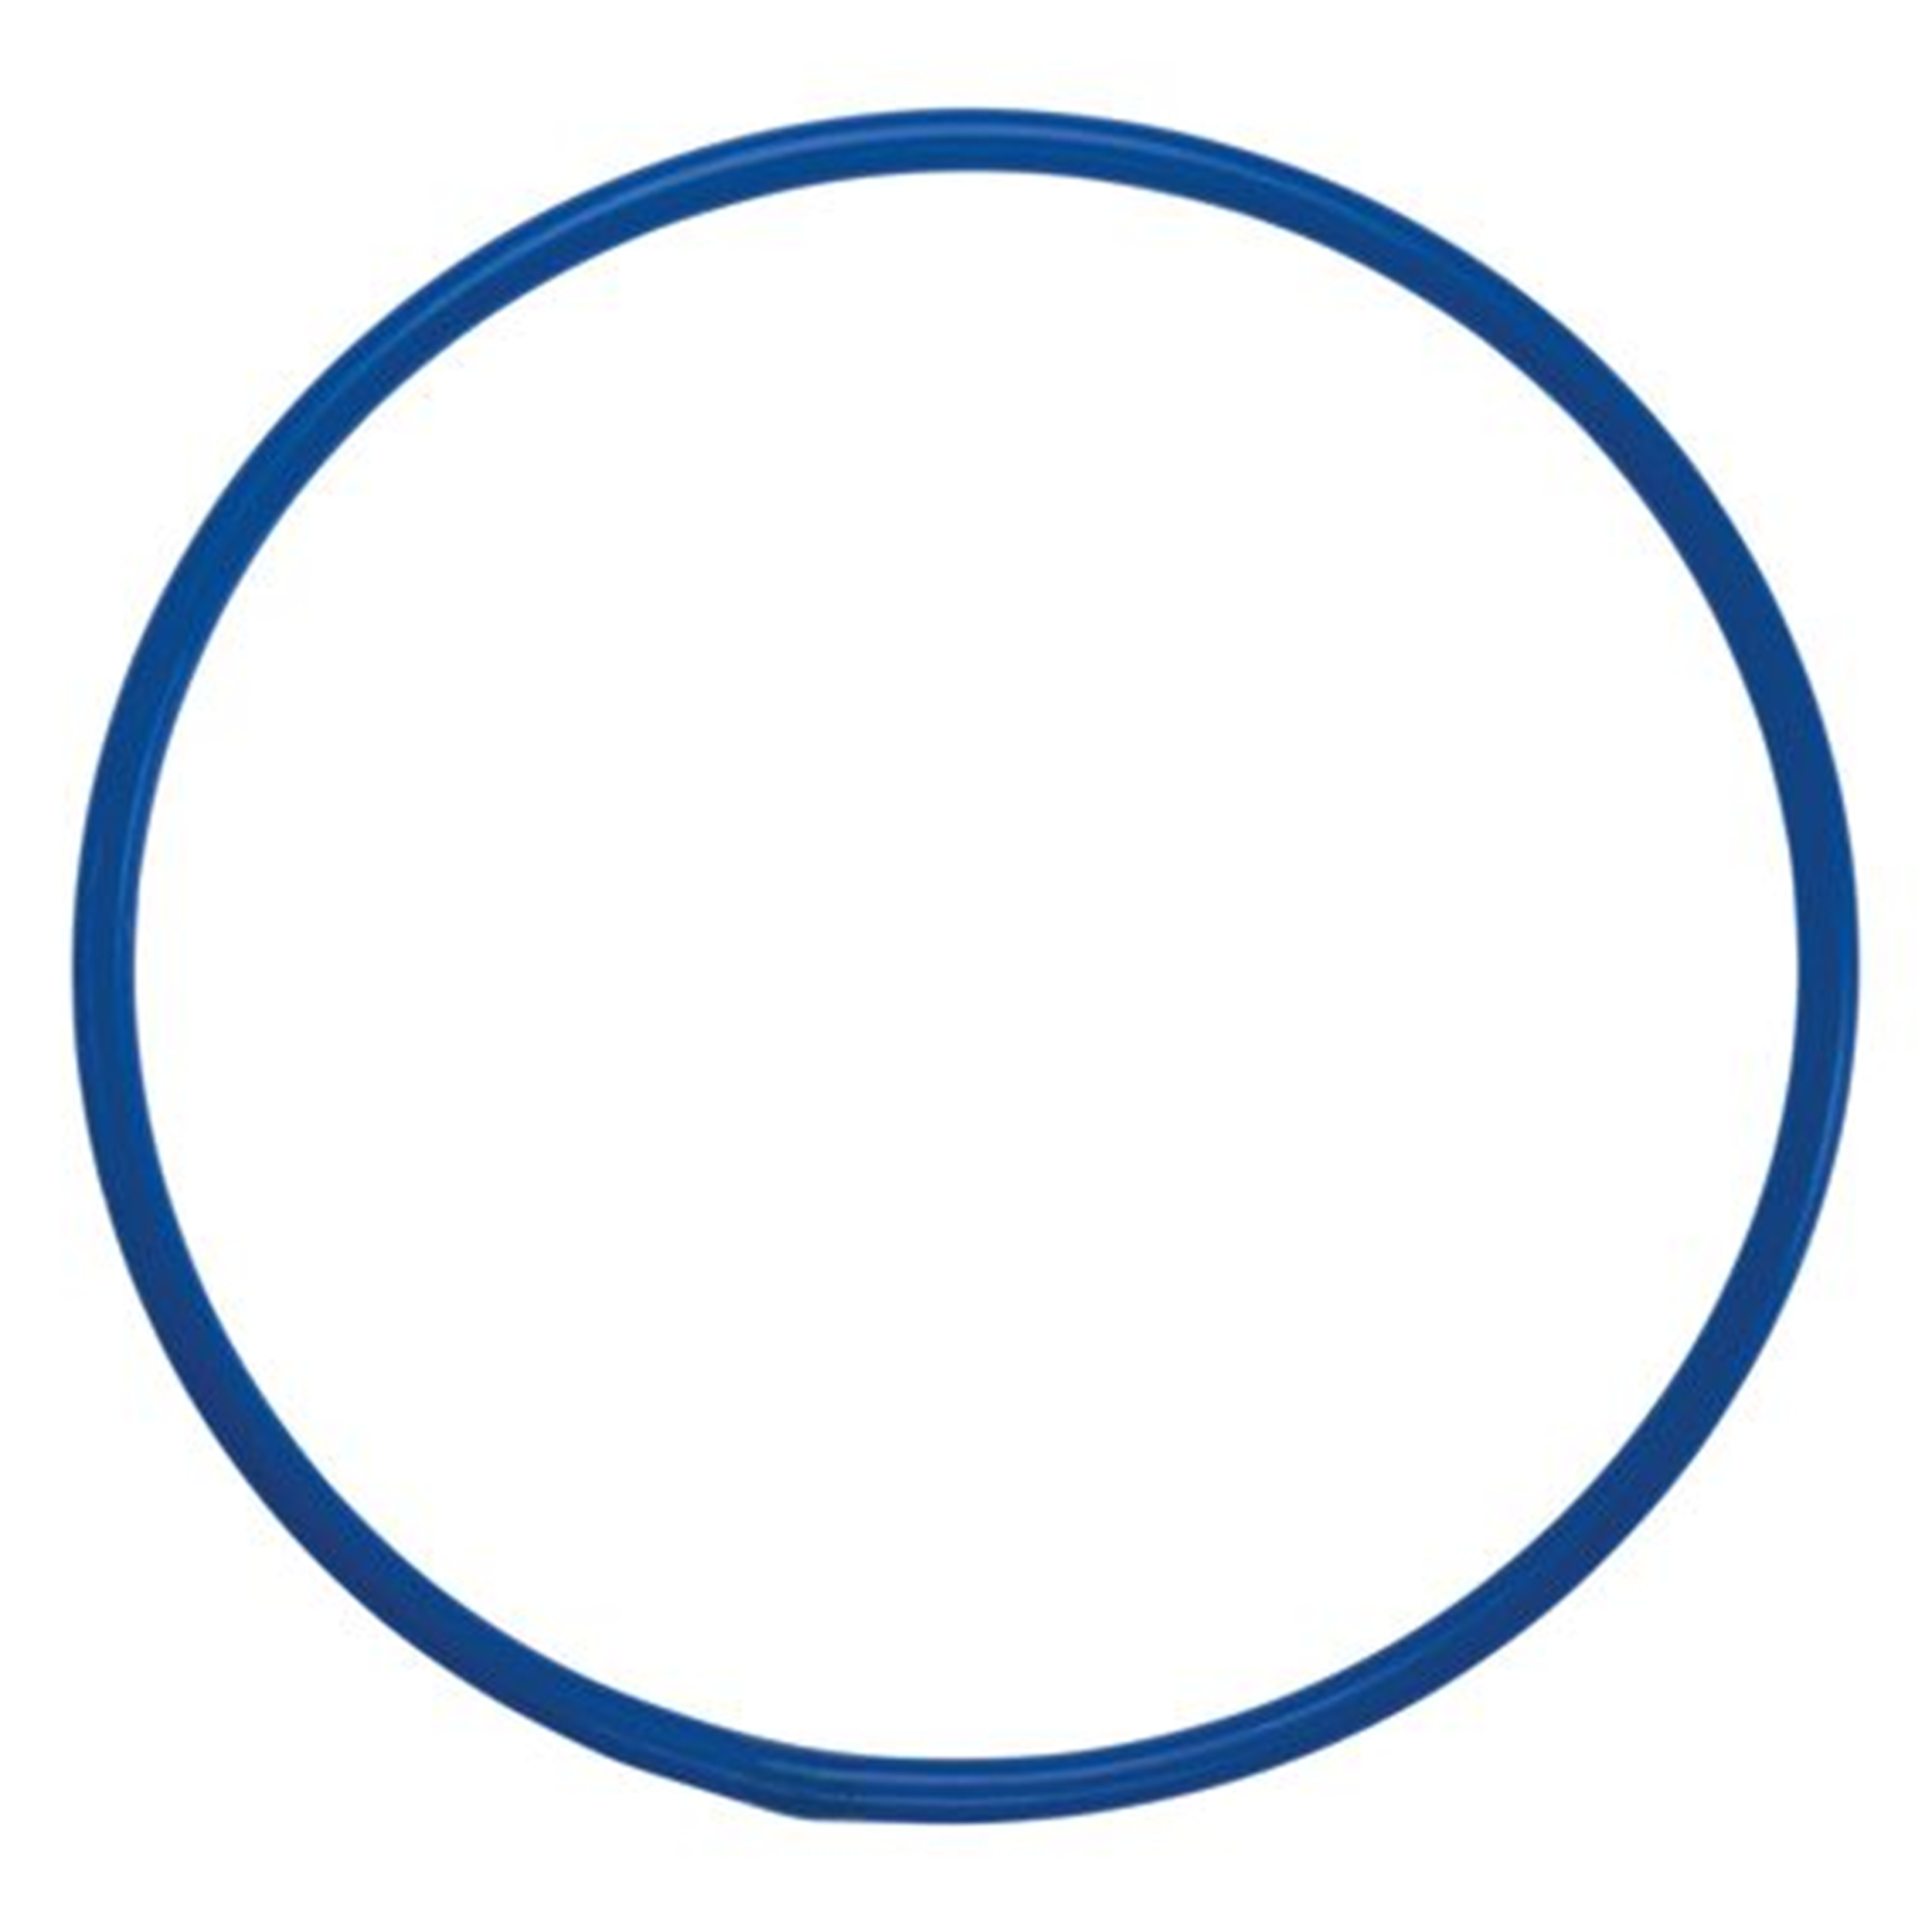 Cerceau rond bleu 75 cm (l'unité)